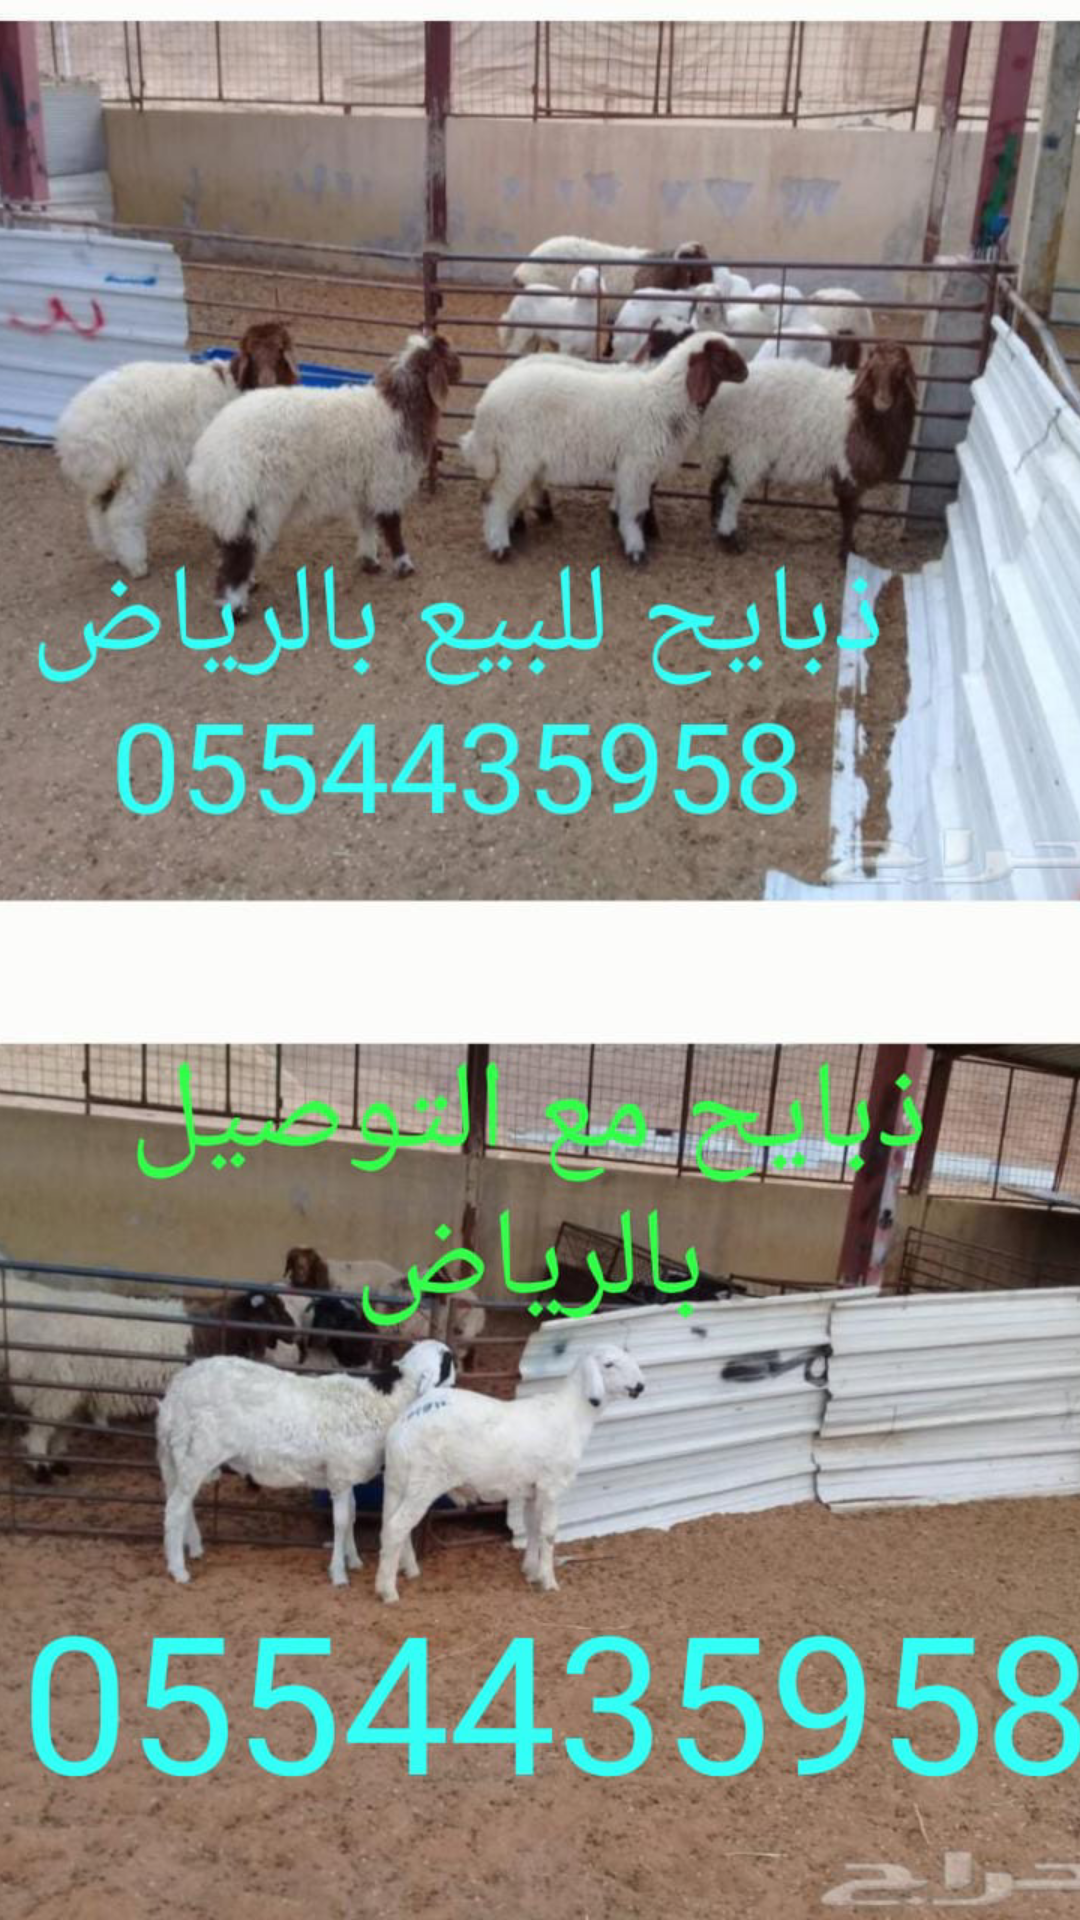 ذبايح حري للبيع بالرياض 0554435958 ذبائح للبيع في الرياض P_1212myezc1